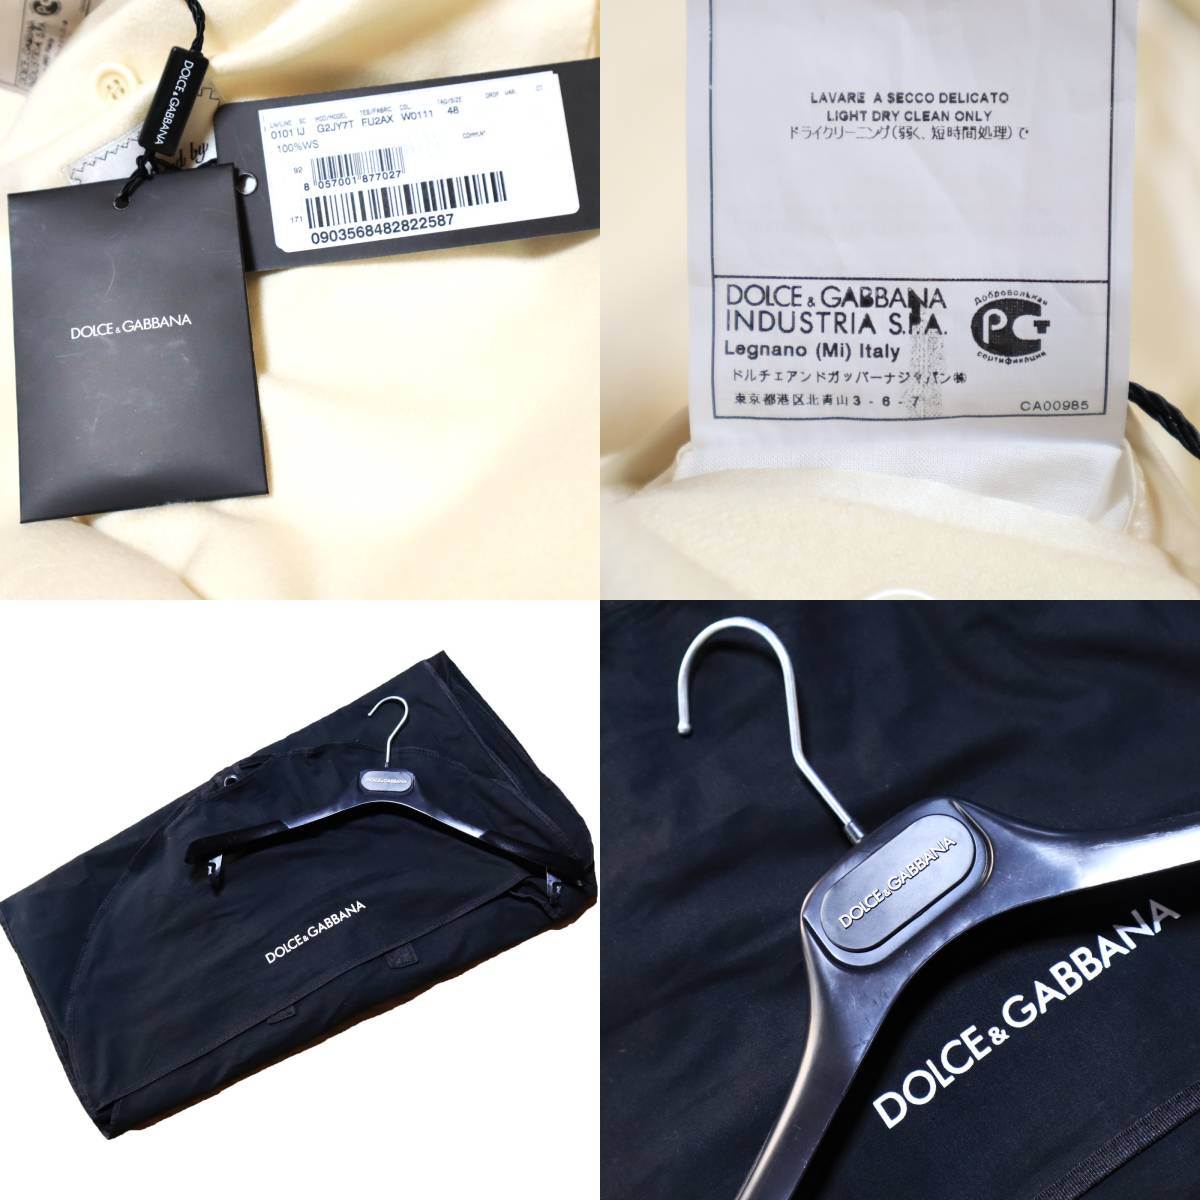  новый товар *60 десять тысяч иен [DOLCE&GABBANA/ Dolce & Gabbana ] рука ... высокий класс. первоклассный кашемир 100% очень редкий "теплый" белый цвет двойной жакет 48